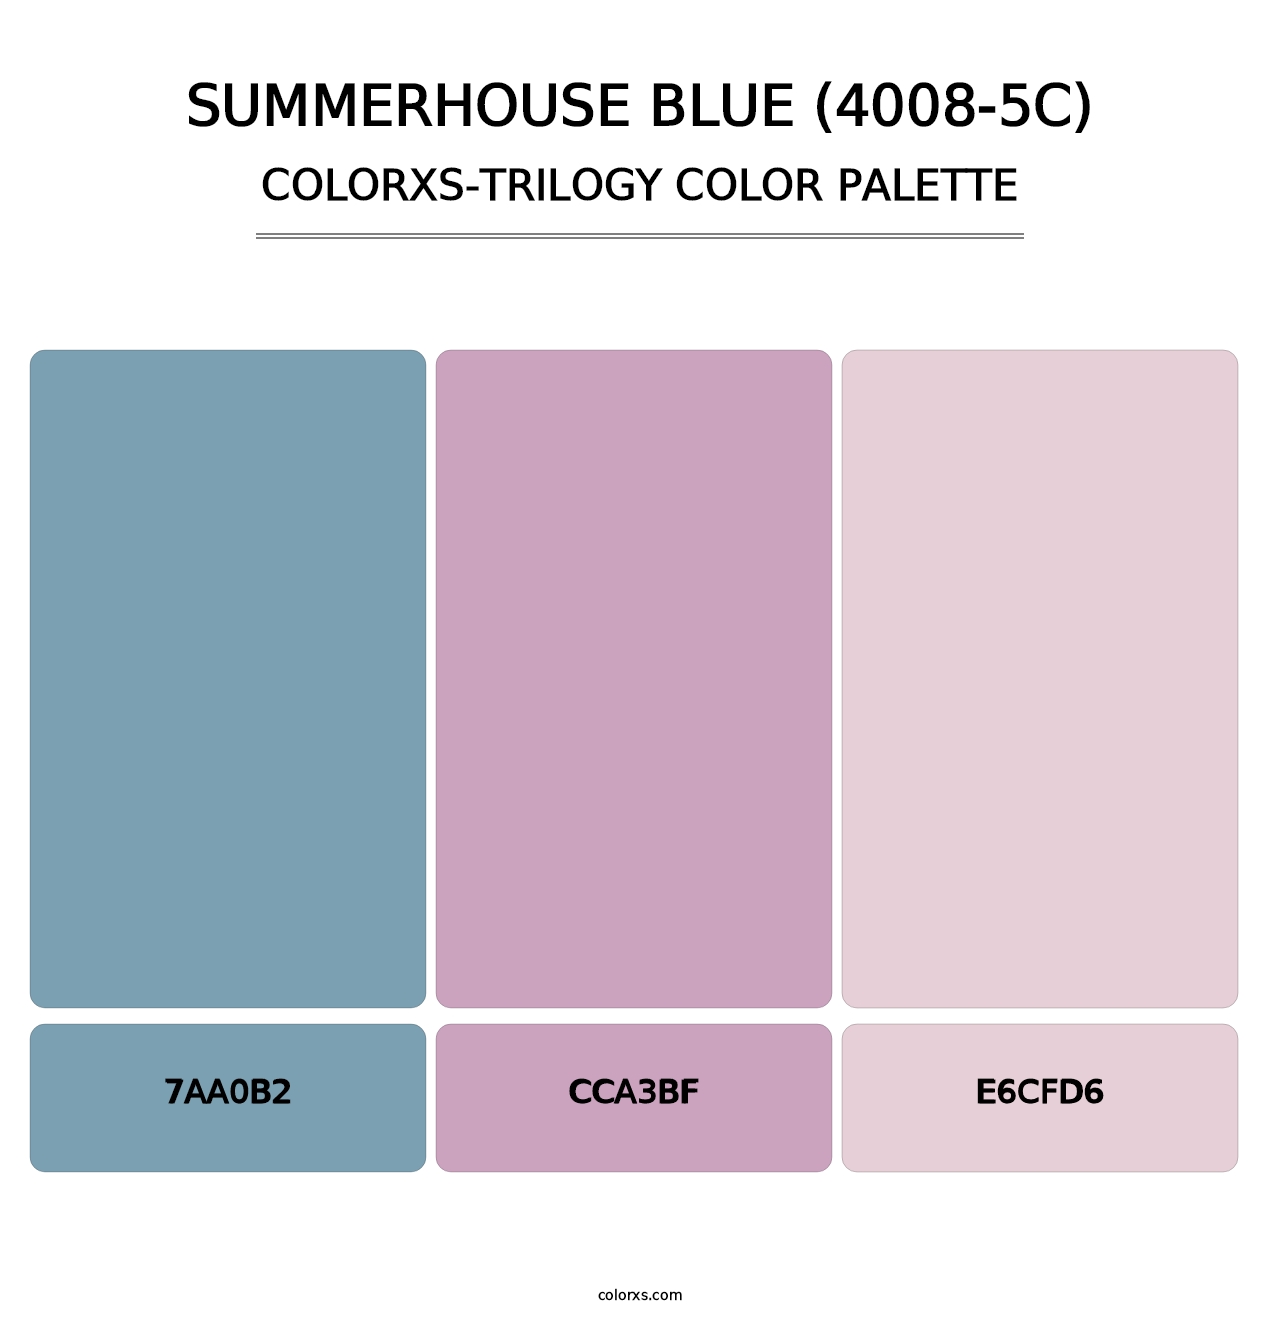 Summerhouse Blue (4008-5C) - Colorxs Trilogy Palette